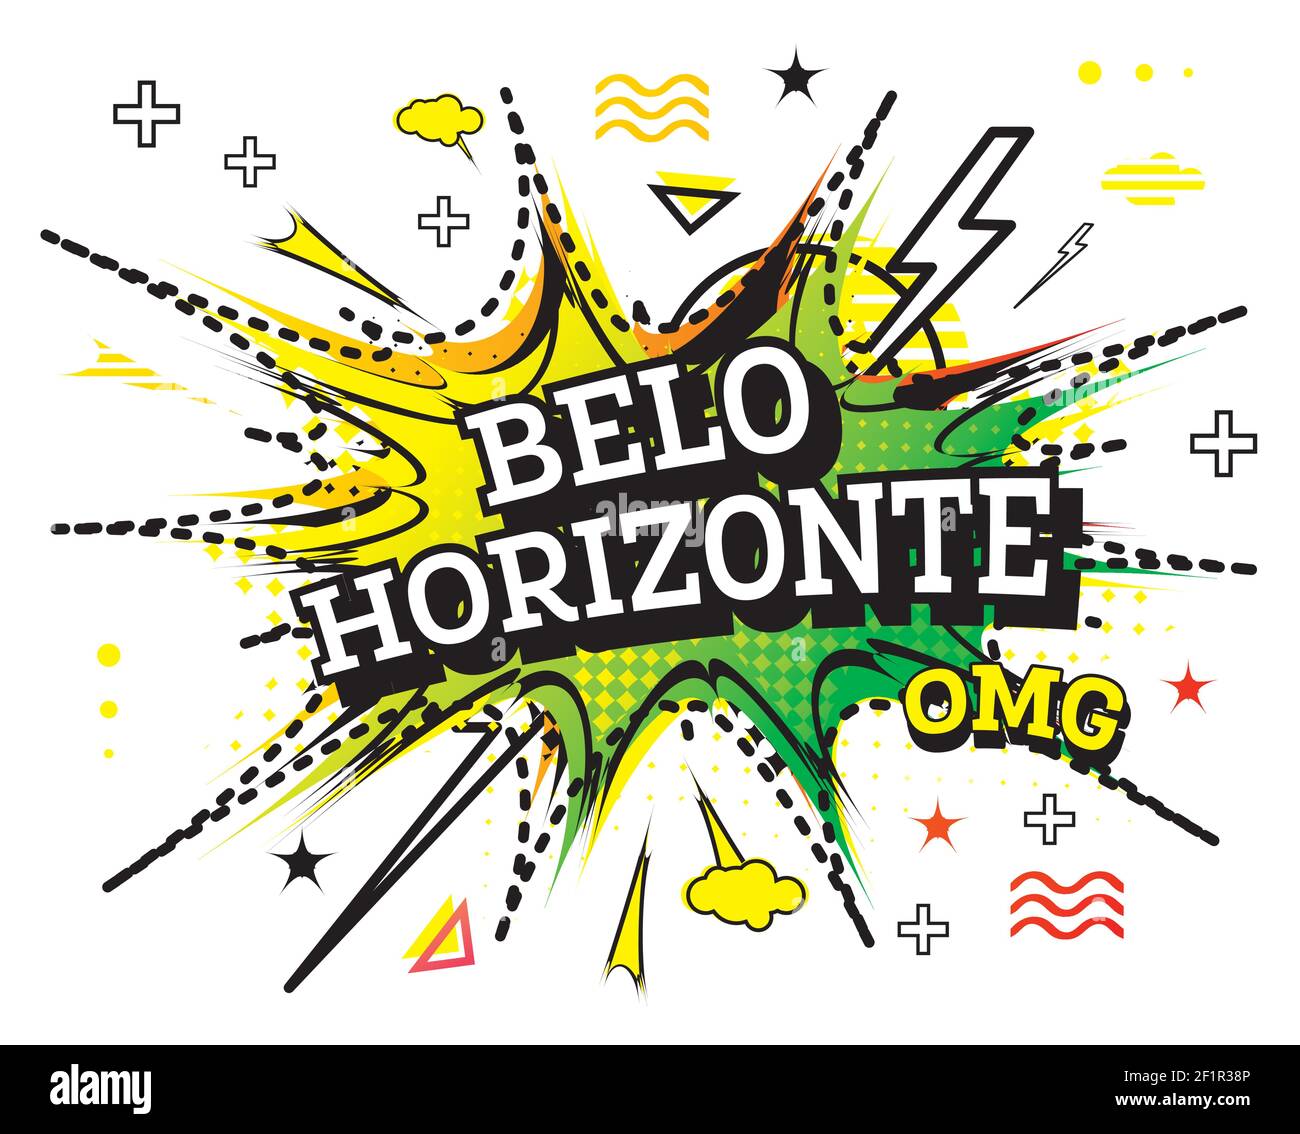 Belo Horizonte Comic testo in stile Pop Art isolato su sfondo bianco. Illustrazione vettoriale. Illustrazione Vettoriale